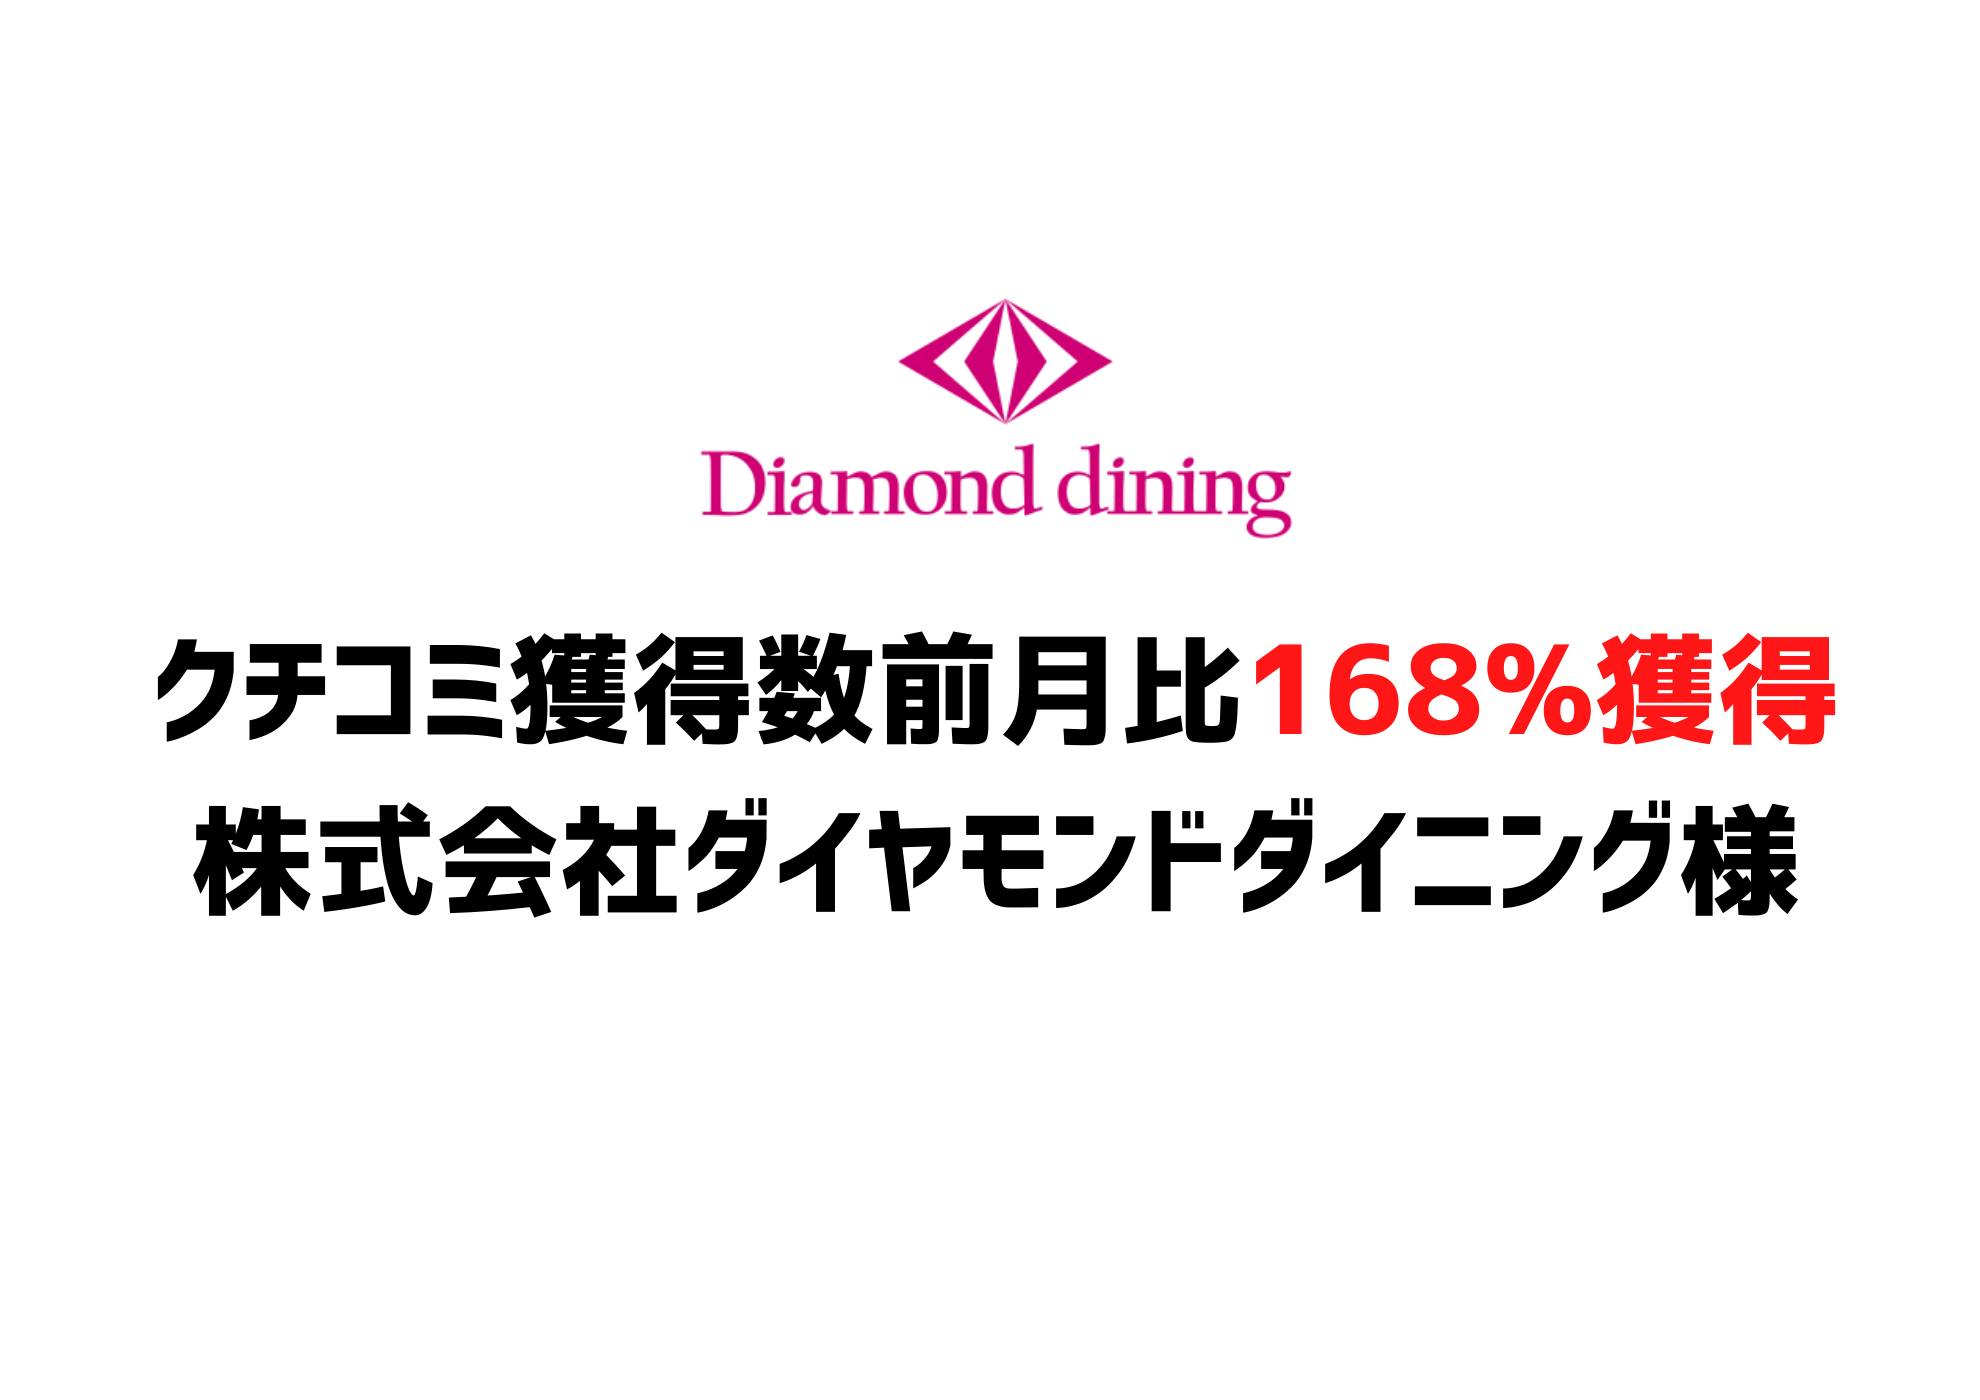 クチコミ獲得数前月比168%獲得ー株式会社ダイヤモンドダイニング様